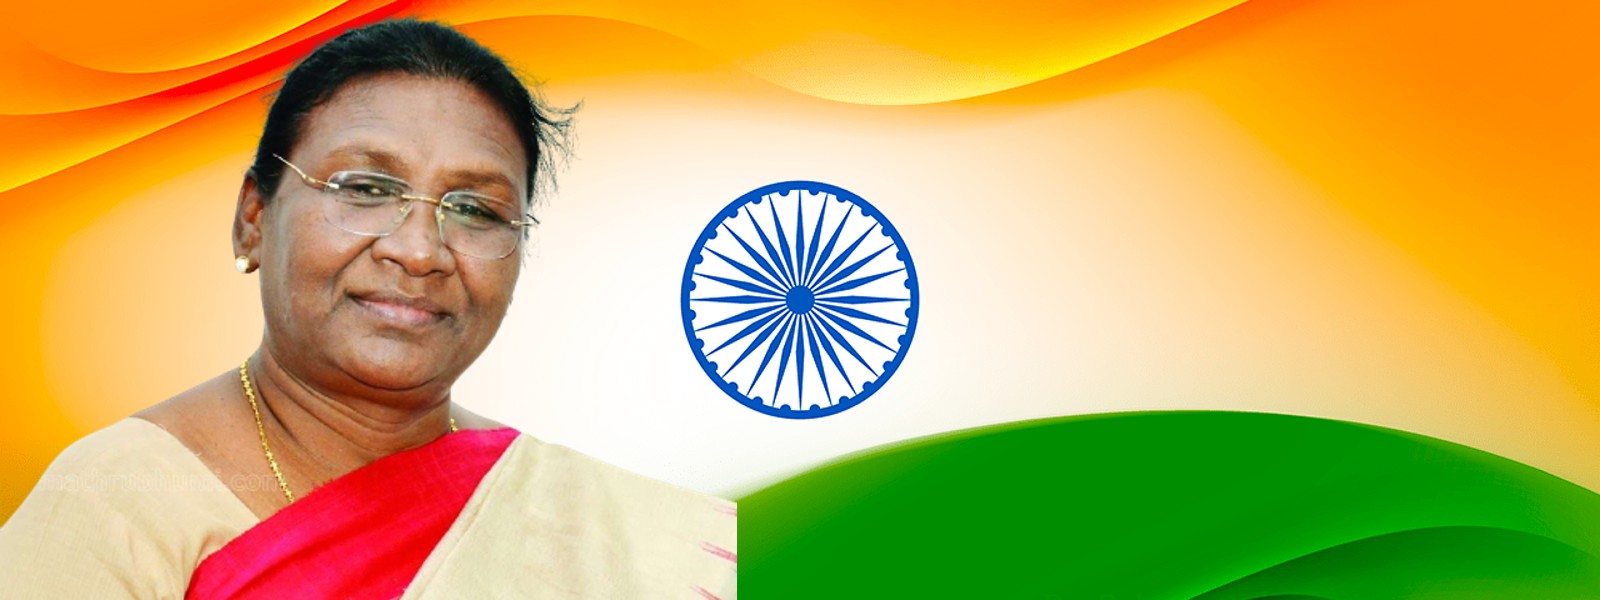 Droupadi Murmu takes oath as India’s 15th President